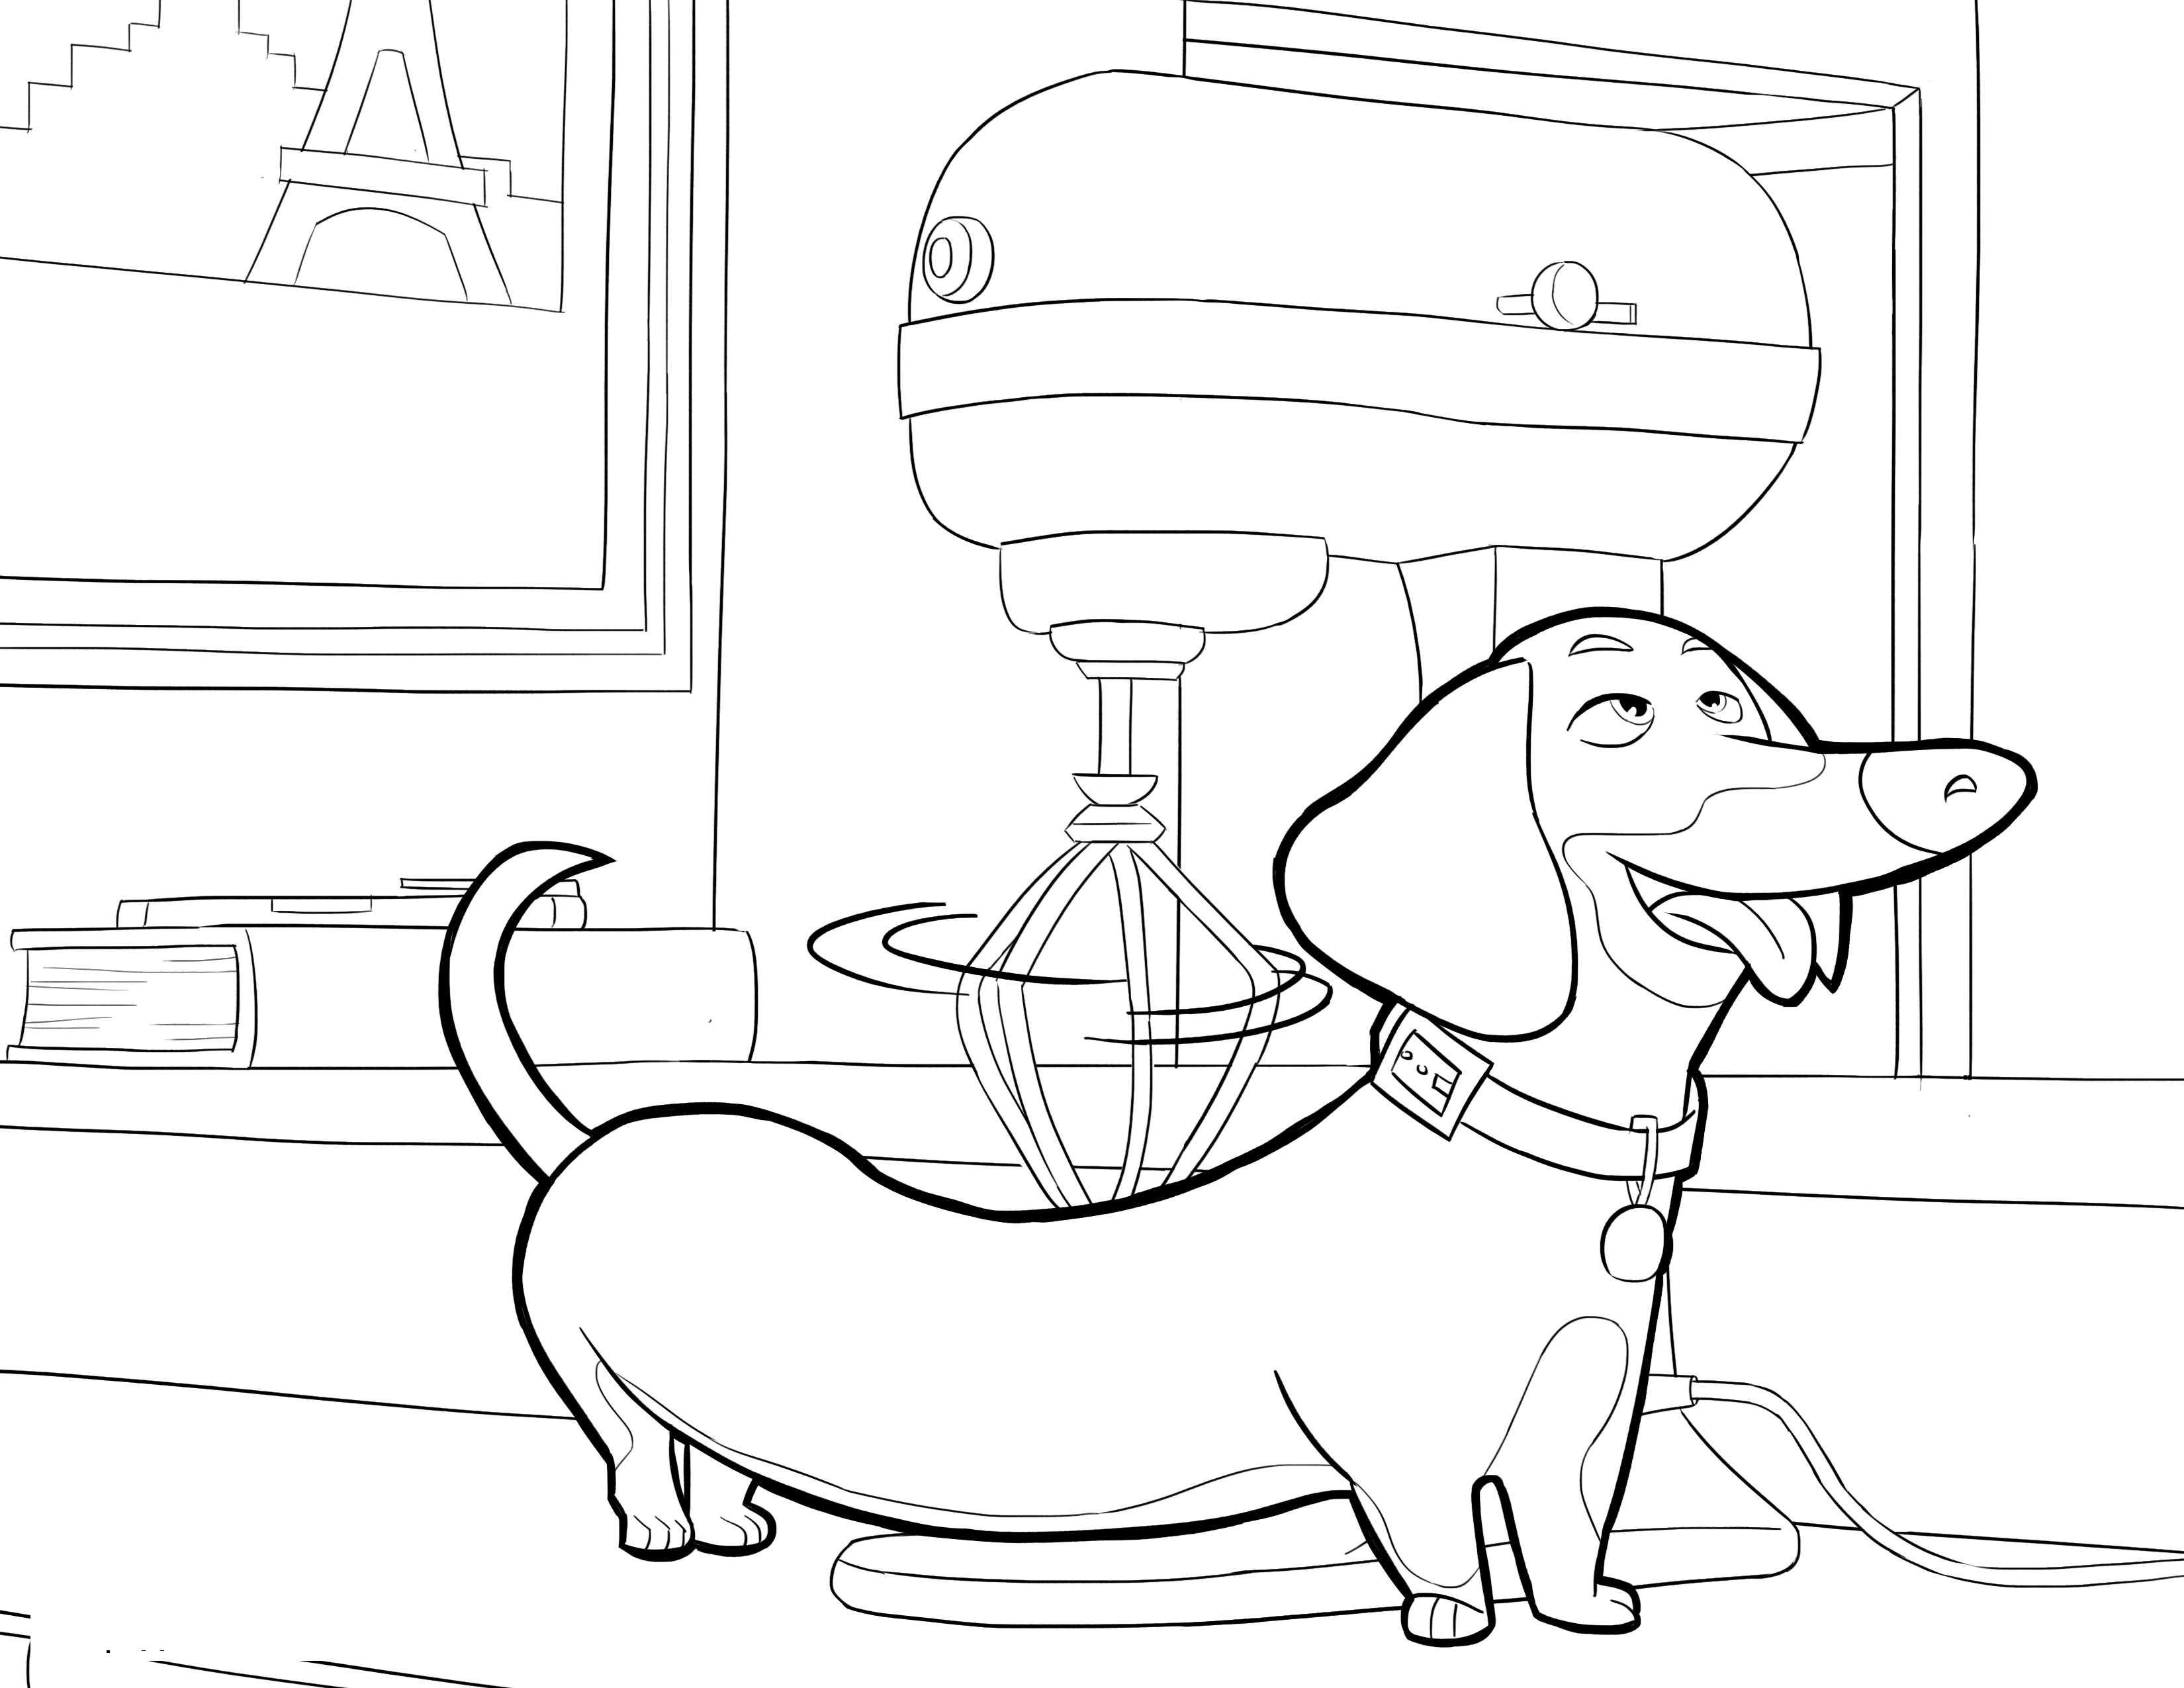 Опис: розмальовки  Такса на кухні. Категорія: домашні тварини. Теги:  собака, такса.